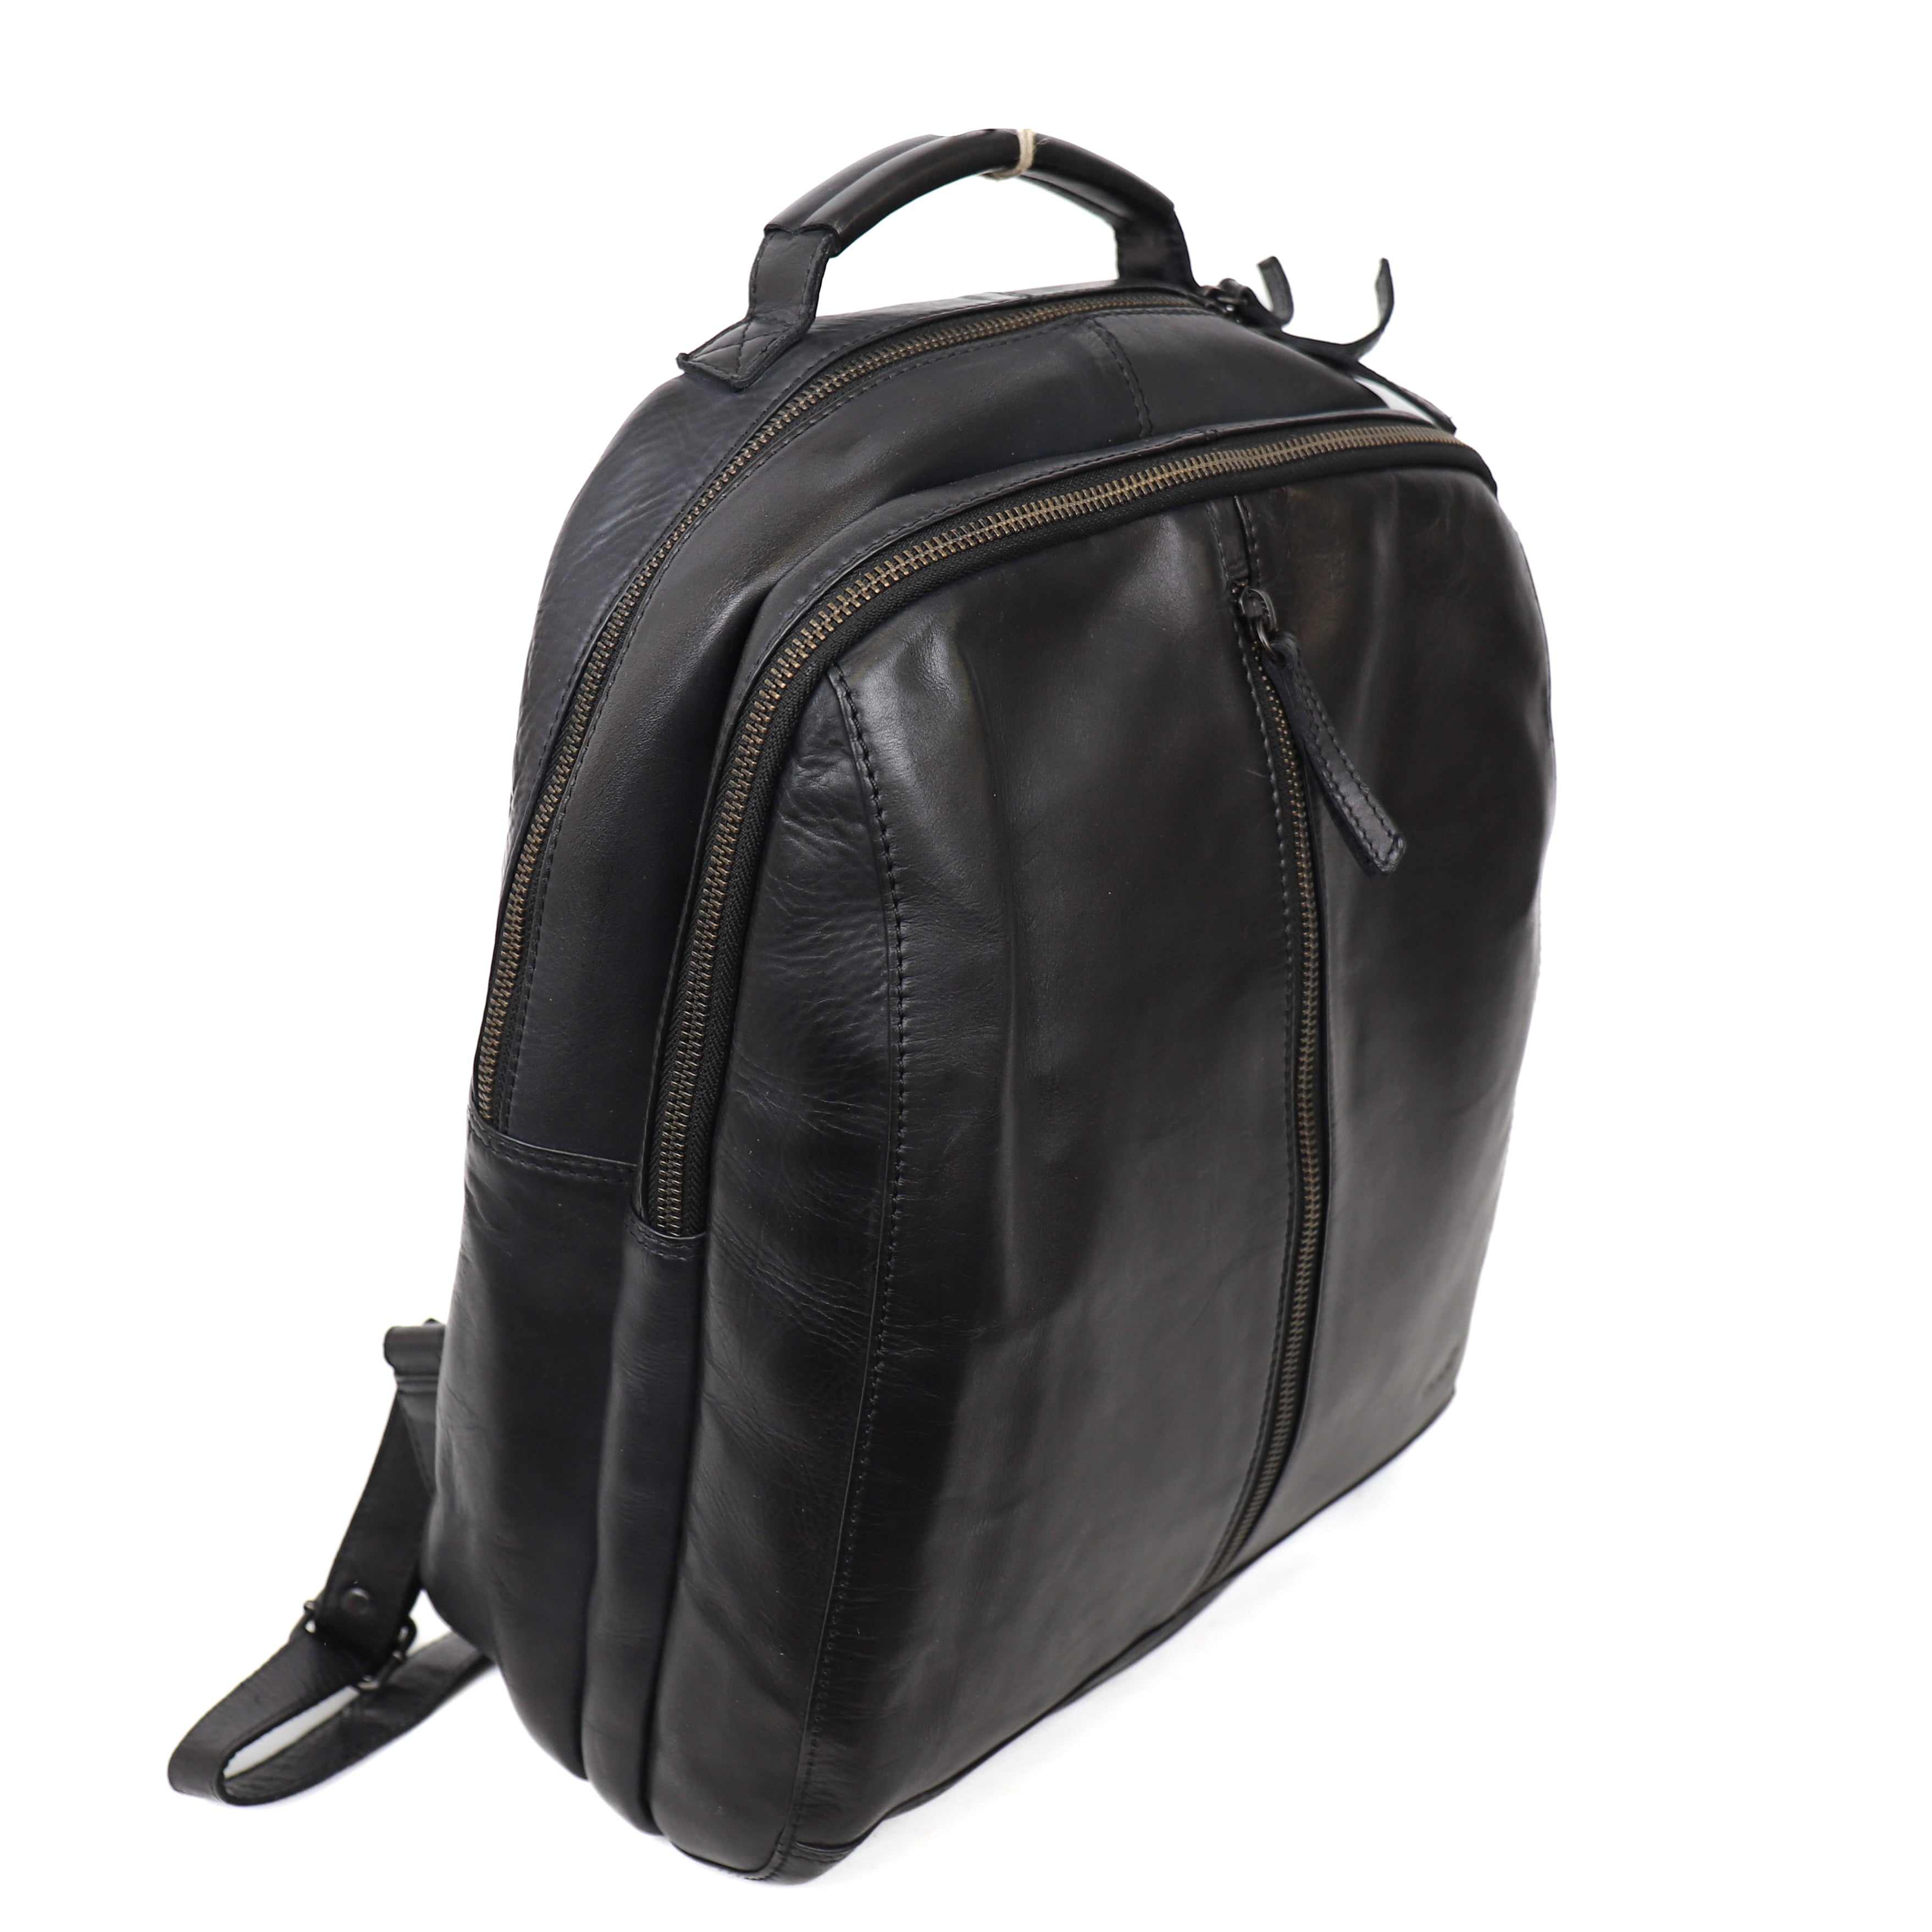 Backpack 'Kae' Black